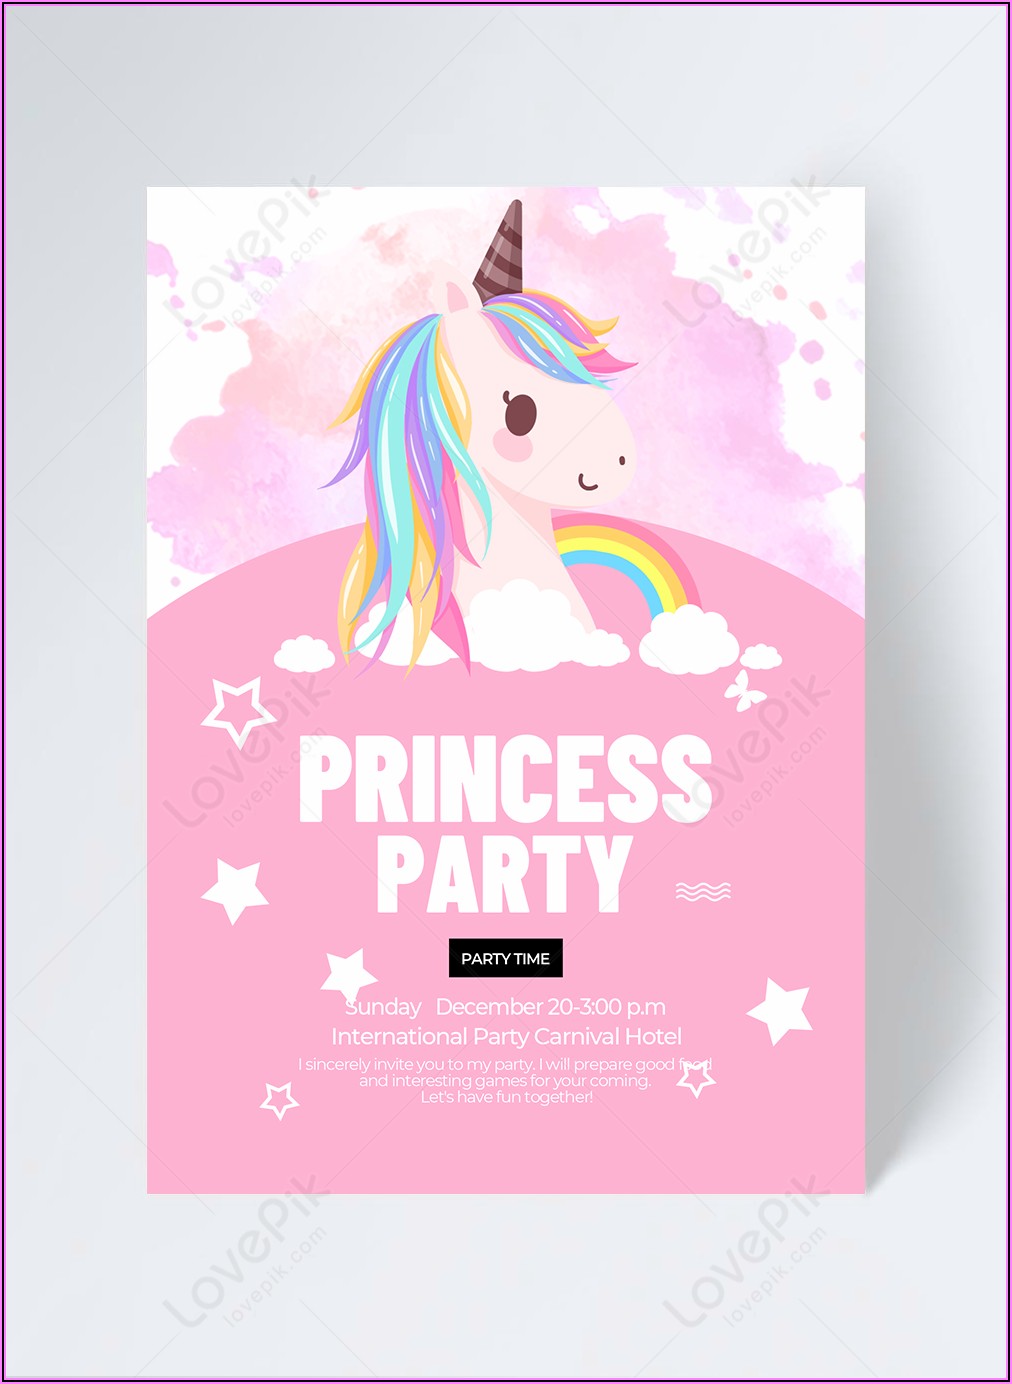 Unicorn Party Invitation Free Template